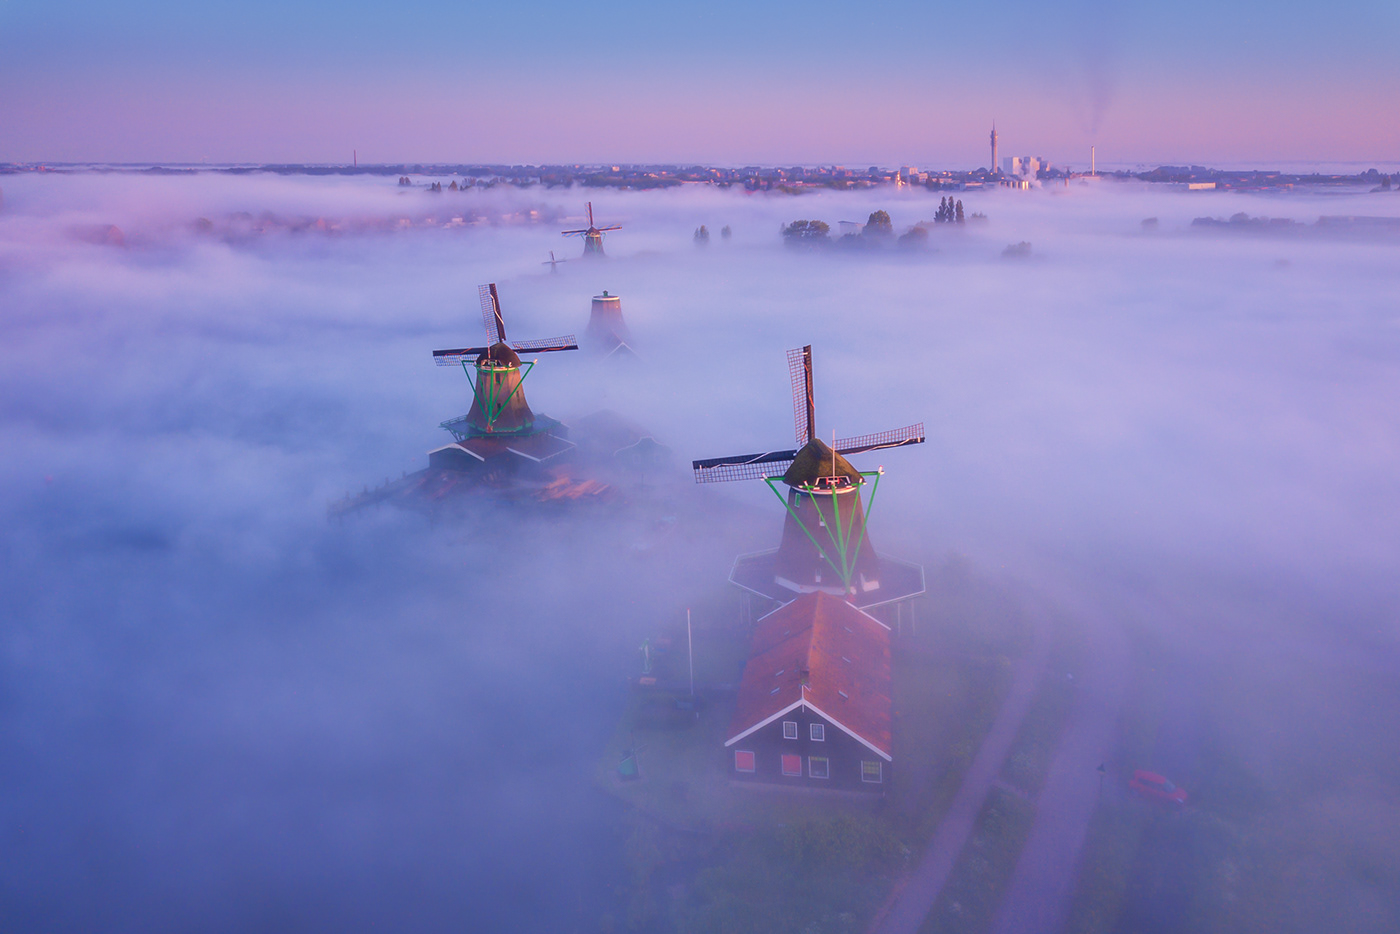 Bộ ảnh thơ mộng về khung cảnh cối xay gió tại Hà Lan - Web nhiếp ảnh